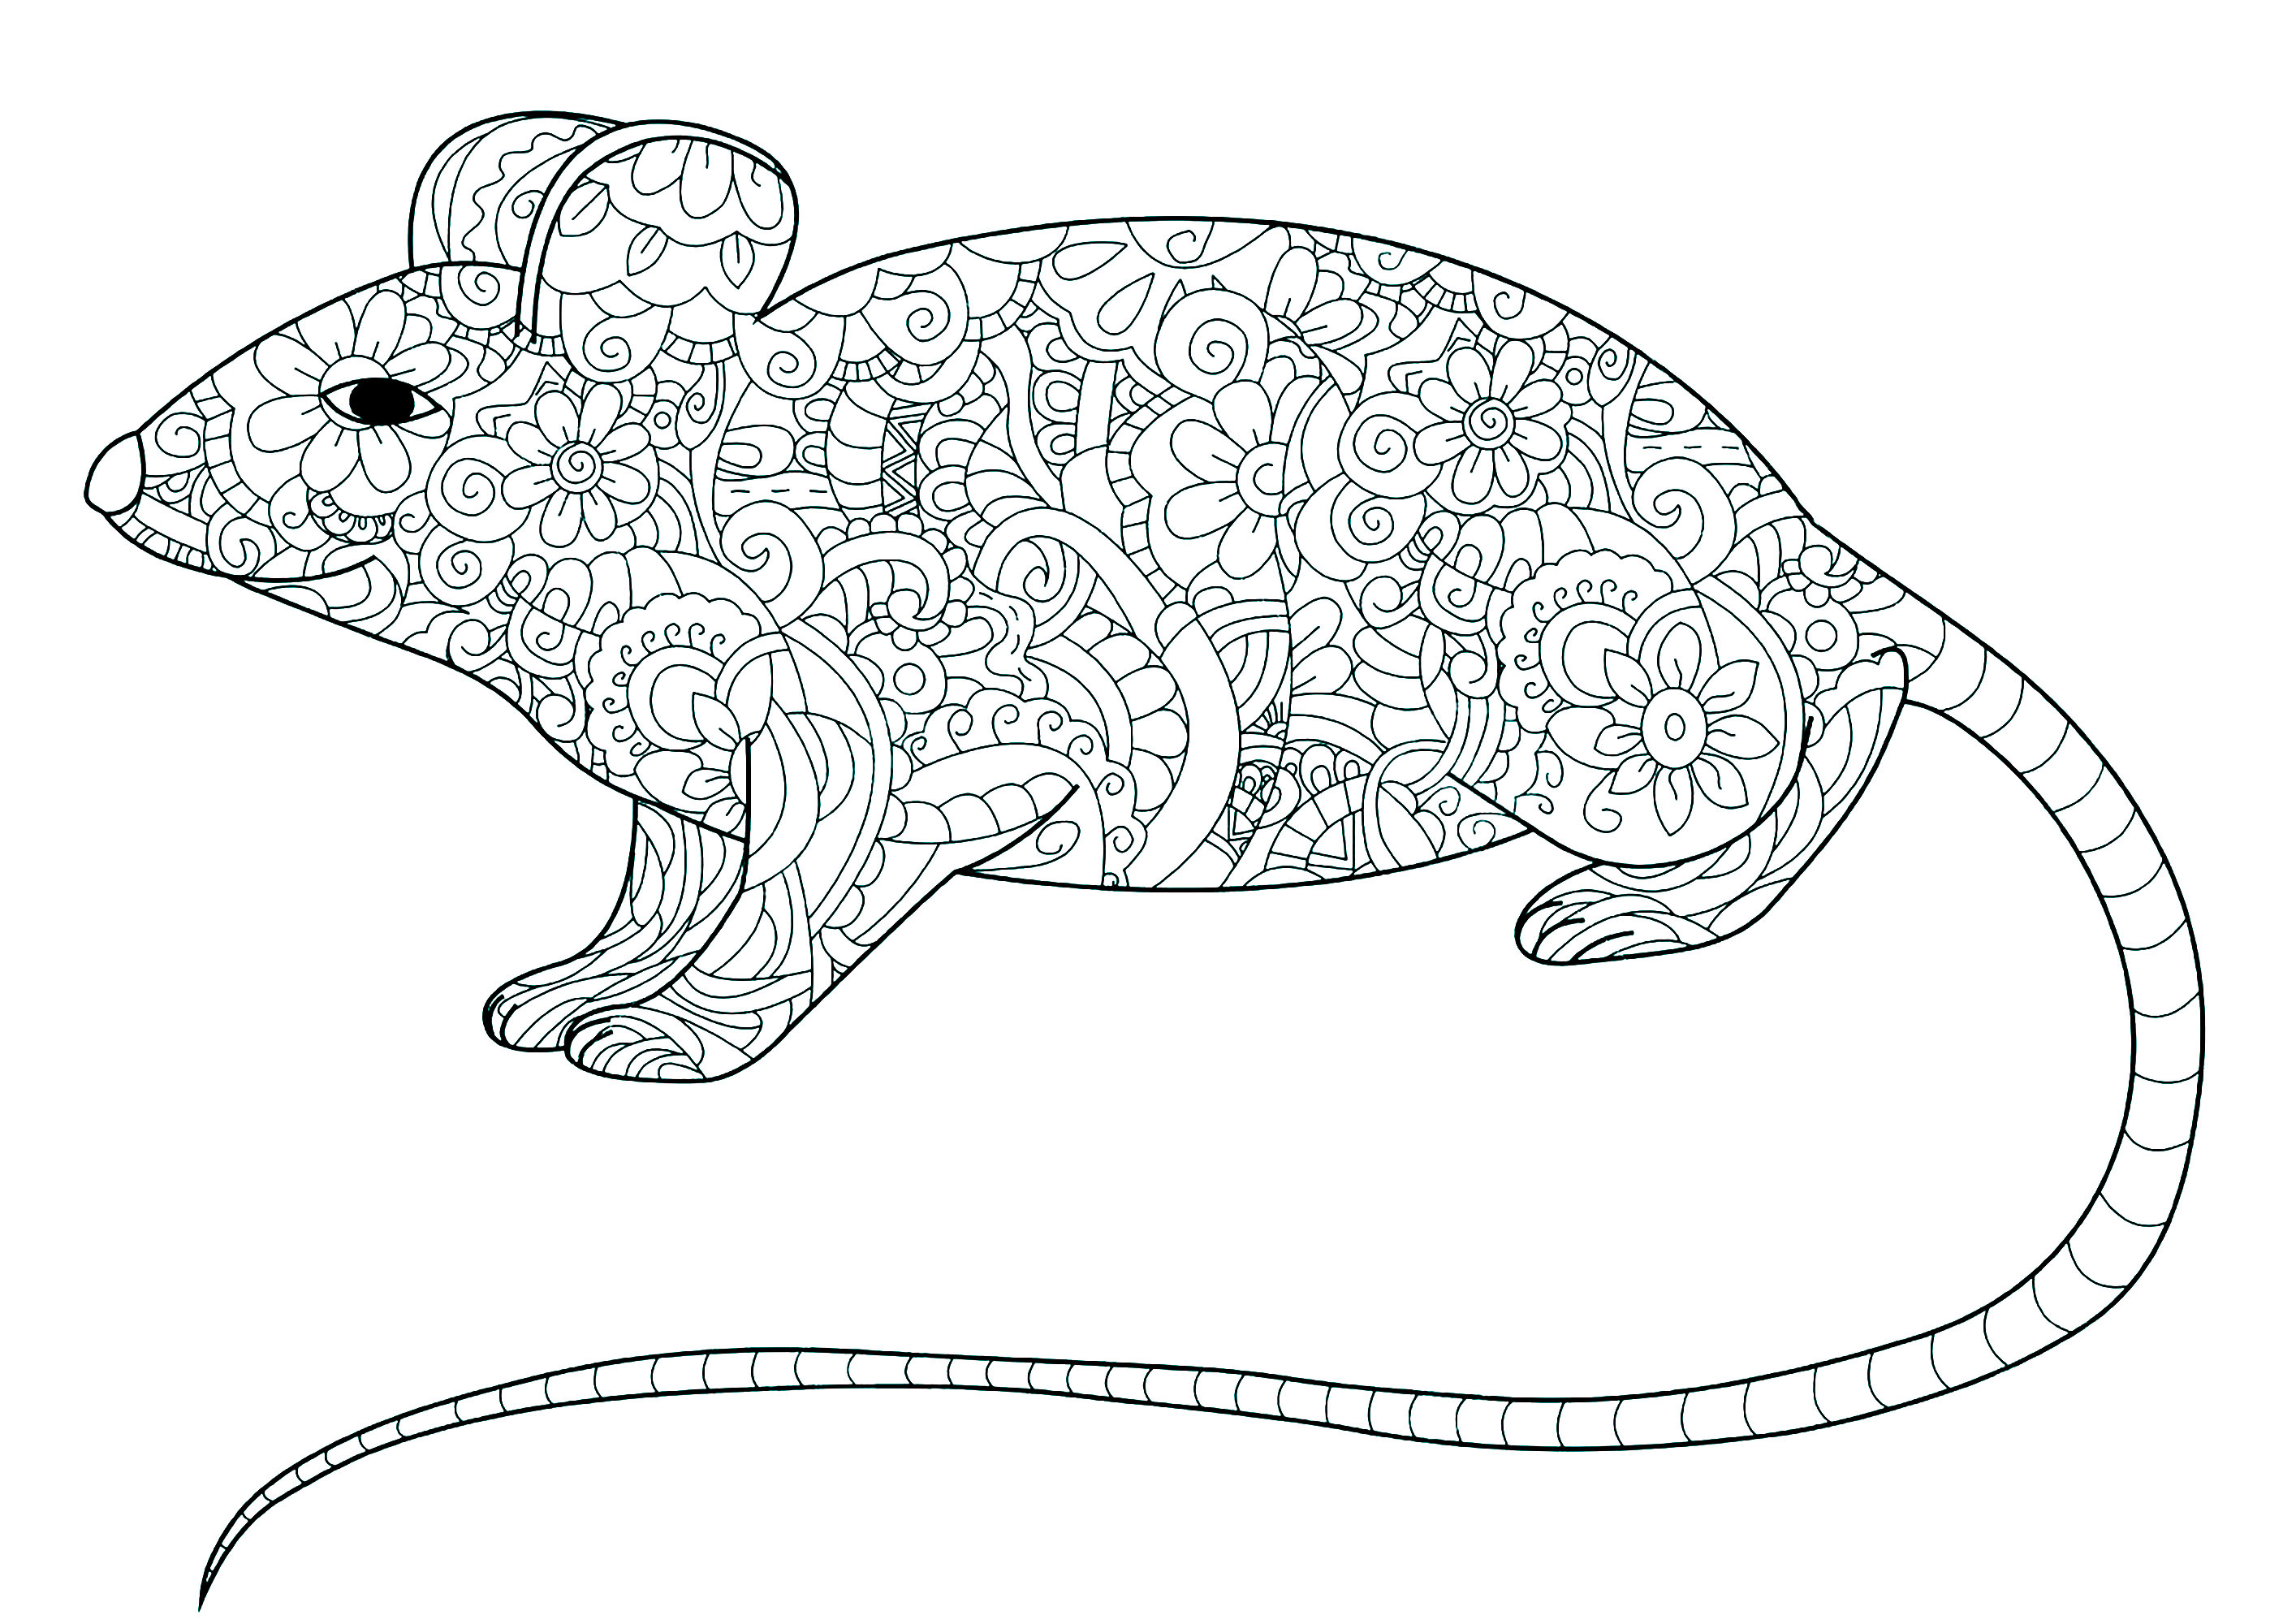 Página para colorear de un ratón con cola larga y el cuerpo lleno de motivos florales